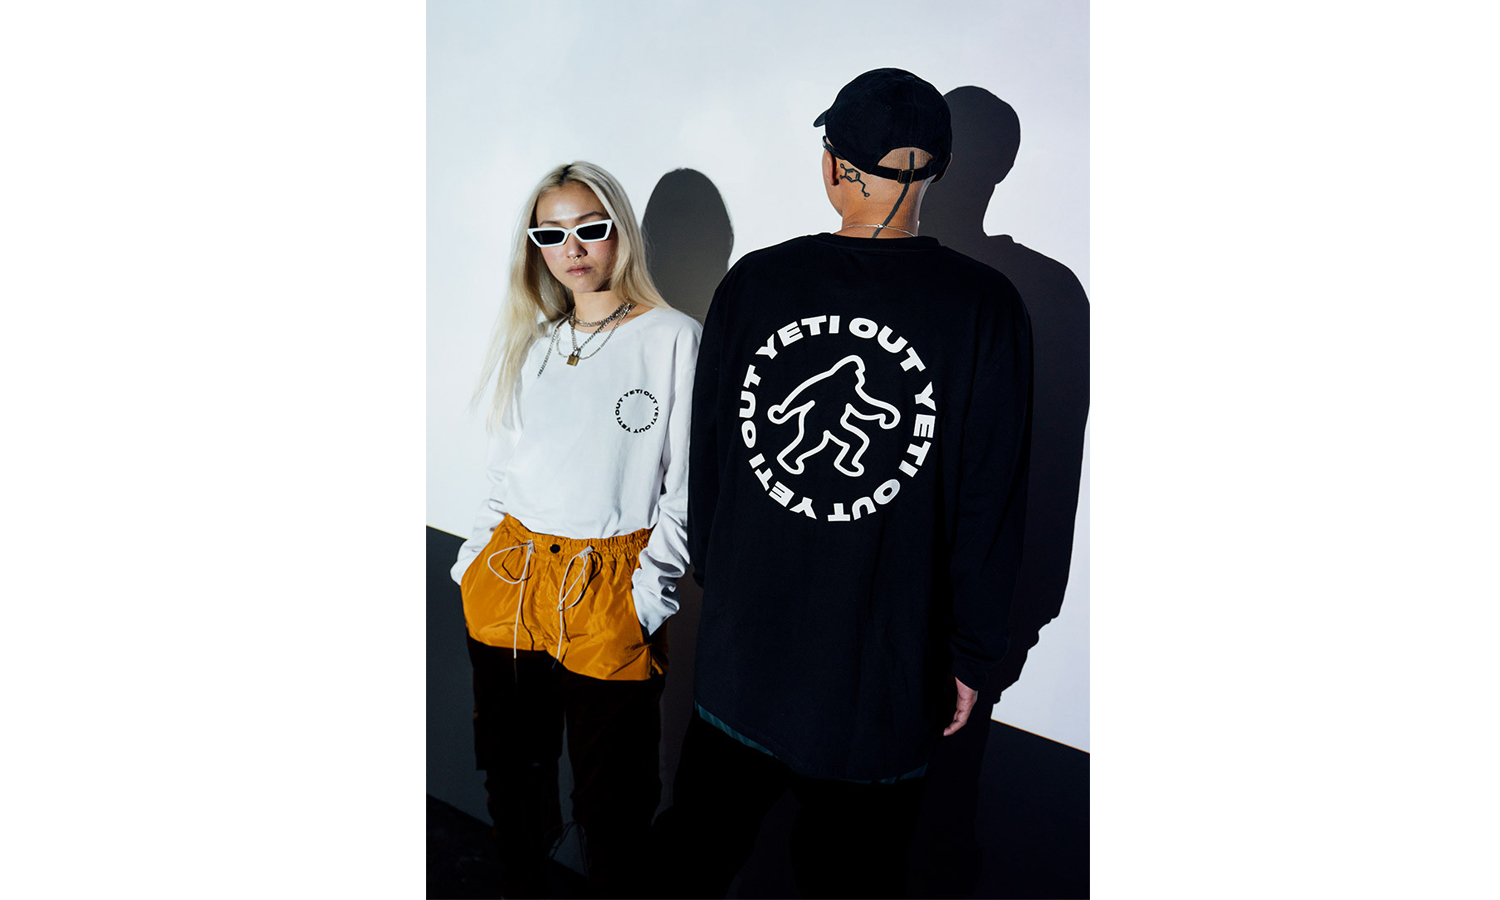 Yeti Out 2019 春夏系列 “High Altitude Clubwear” 发售